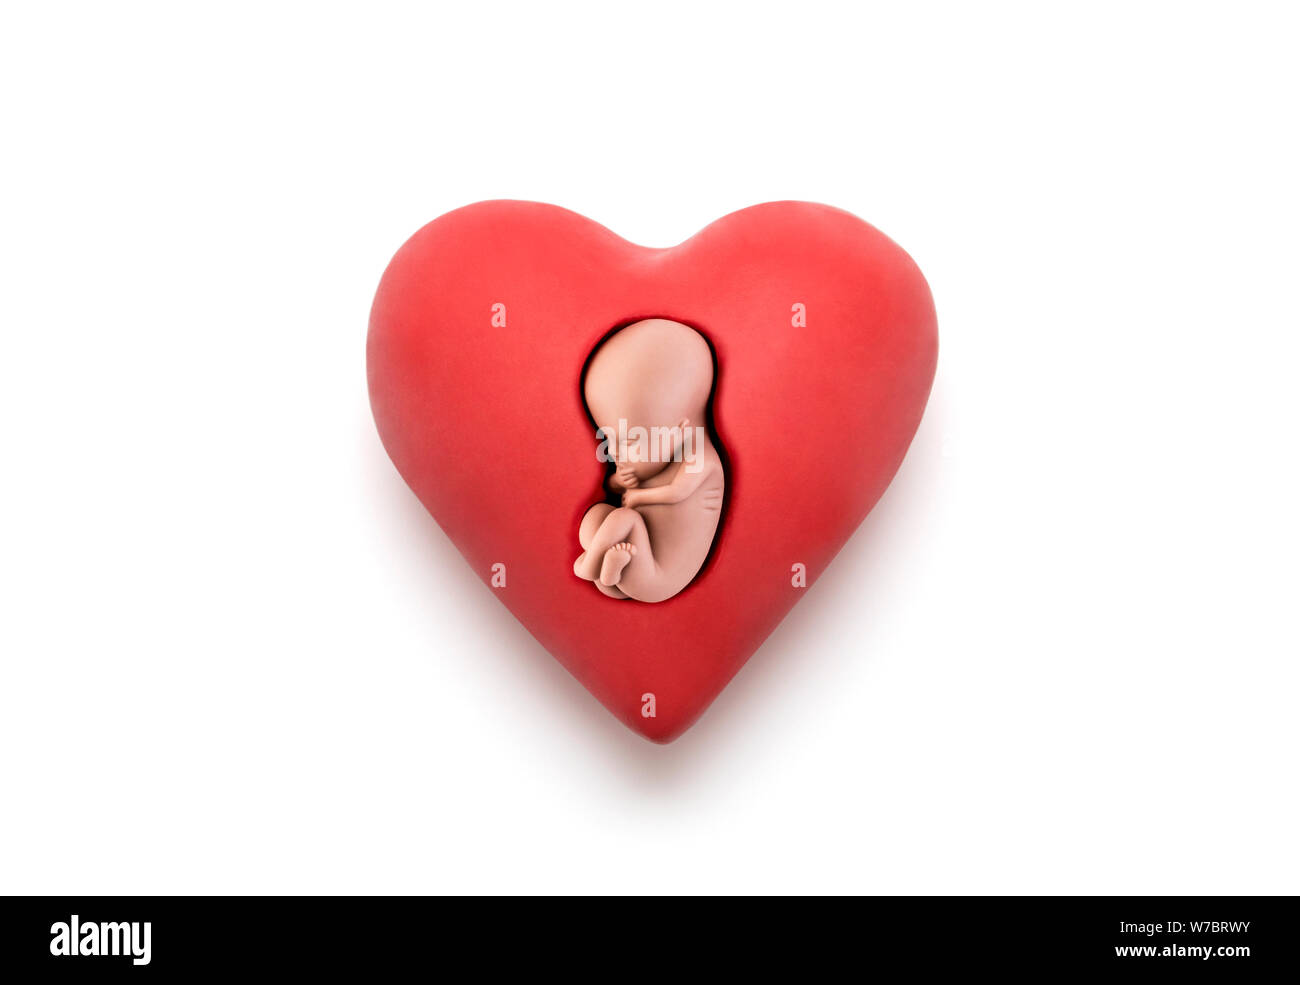 Embrione umano nel cuore rosso su sfondo bianco con tracciato di ritaglio Foto Stock